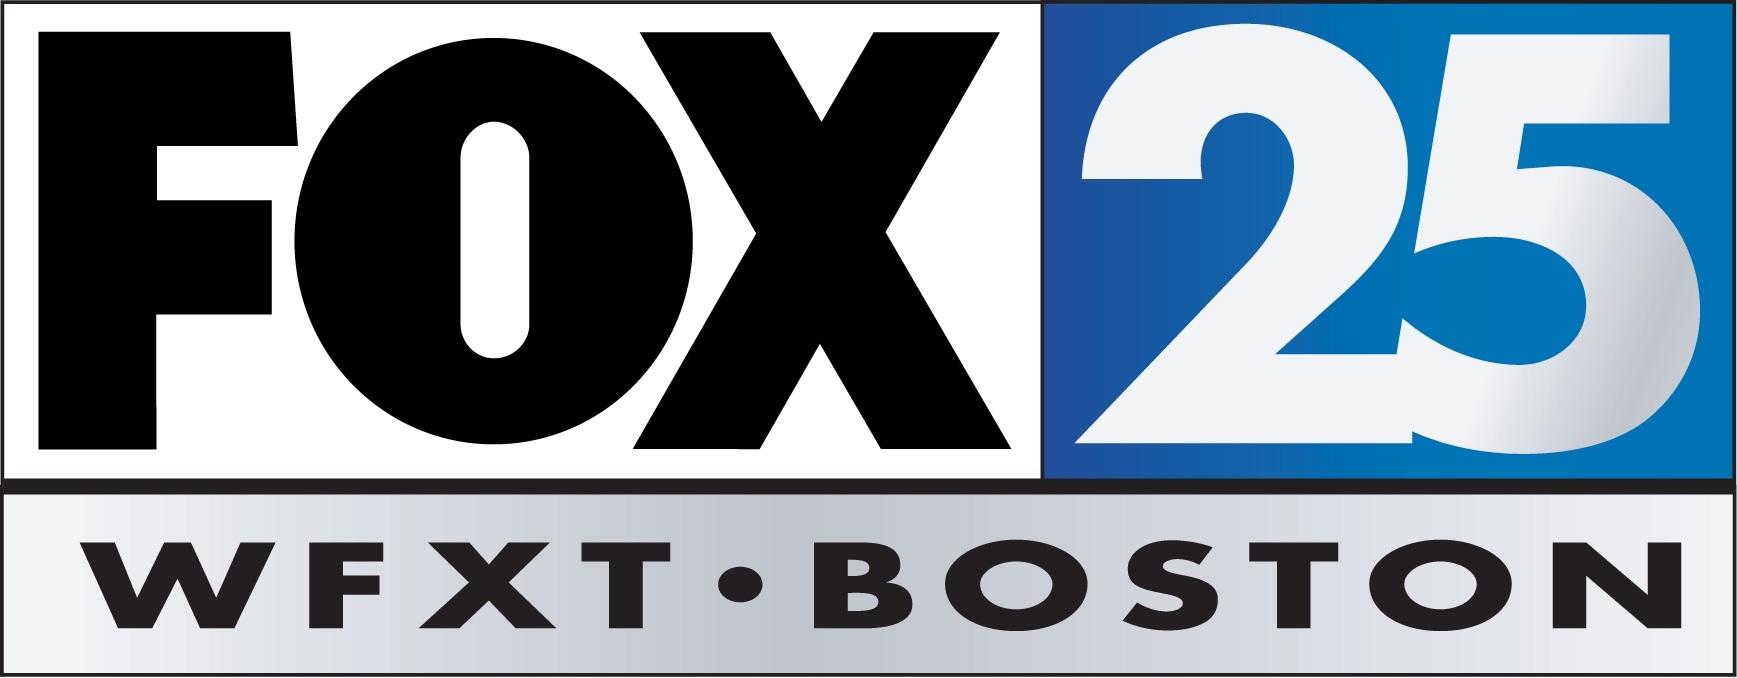 Fox 25. Телеканал Fan логотип. Fox logo домофоны. Splits59 лого. Boston, 3 TV logo.